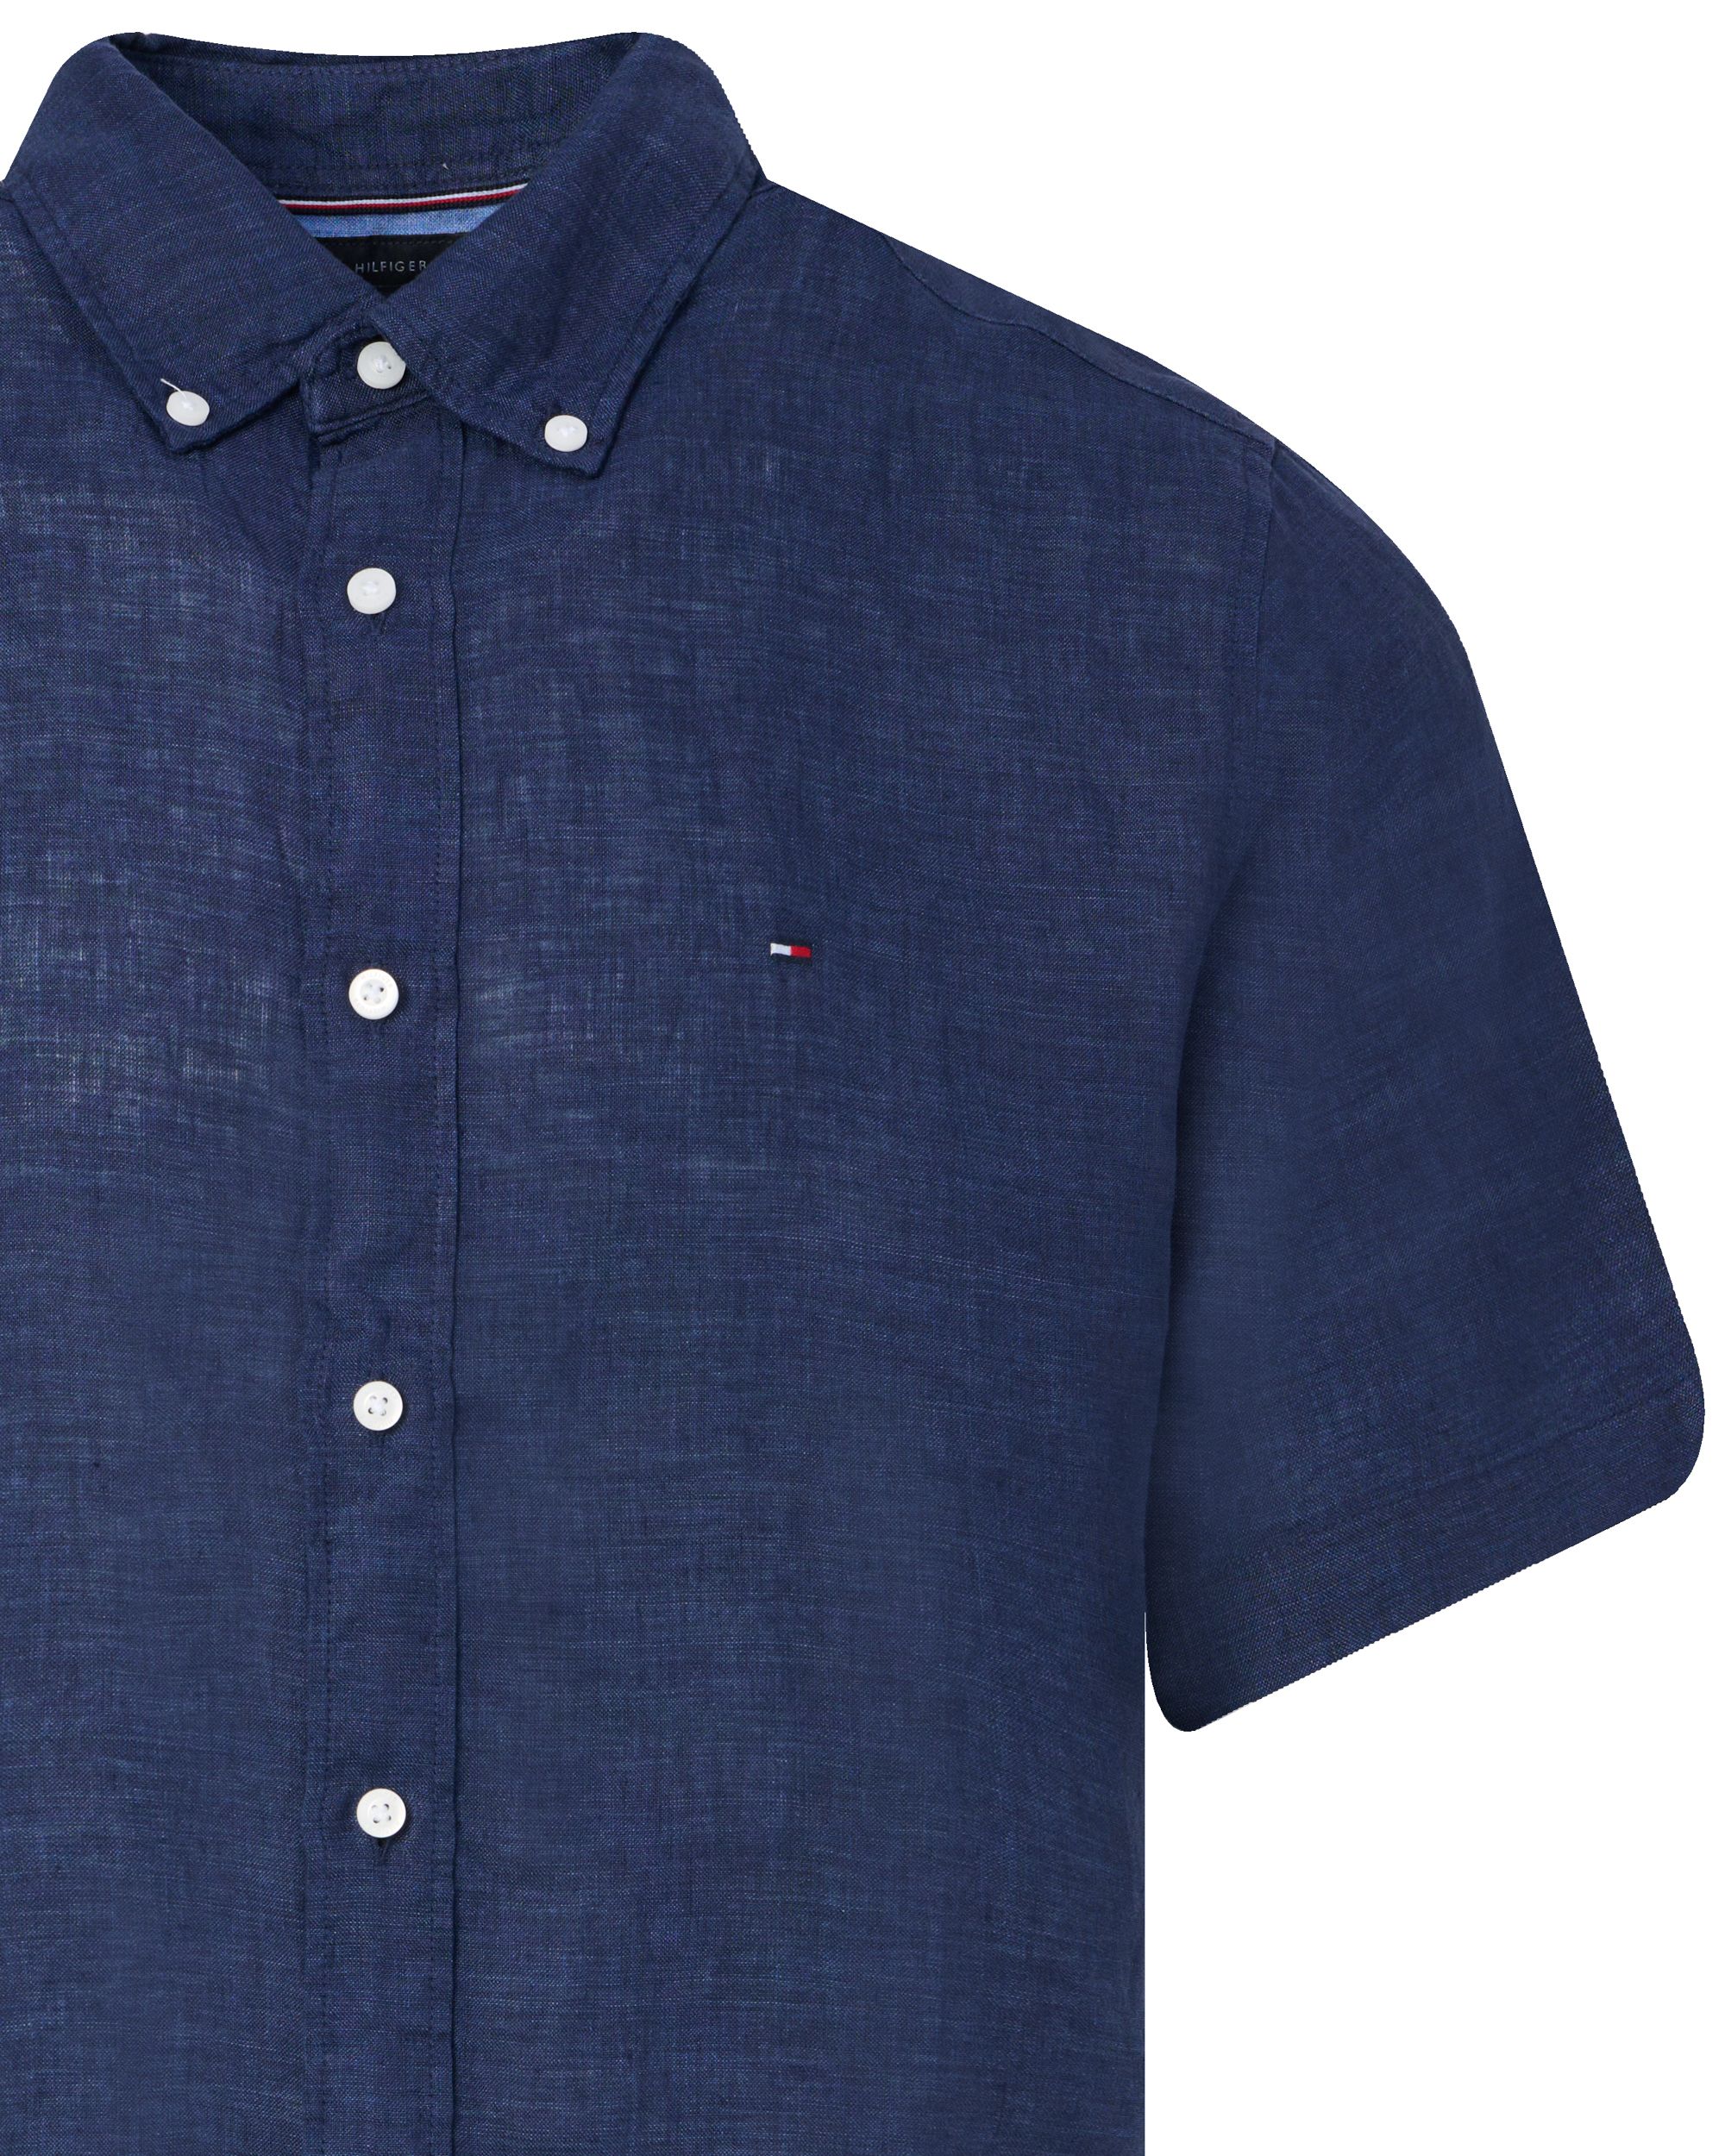 Tommy Hilfiger Menswear Casual Overhemd KM Donker blauw 094682-001-L